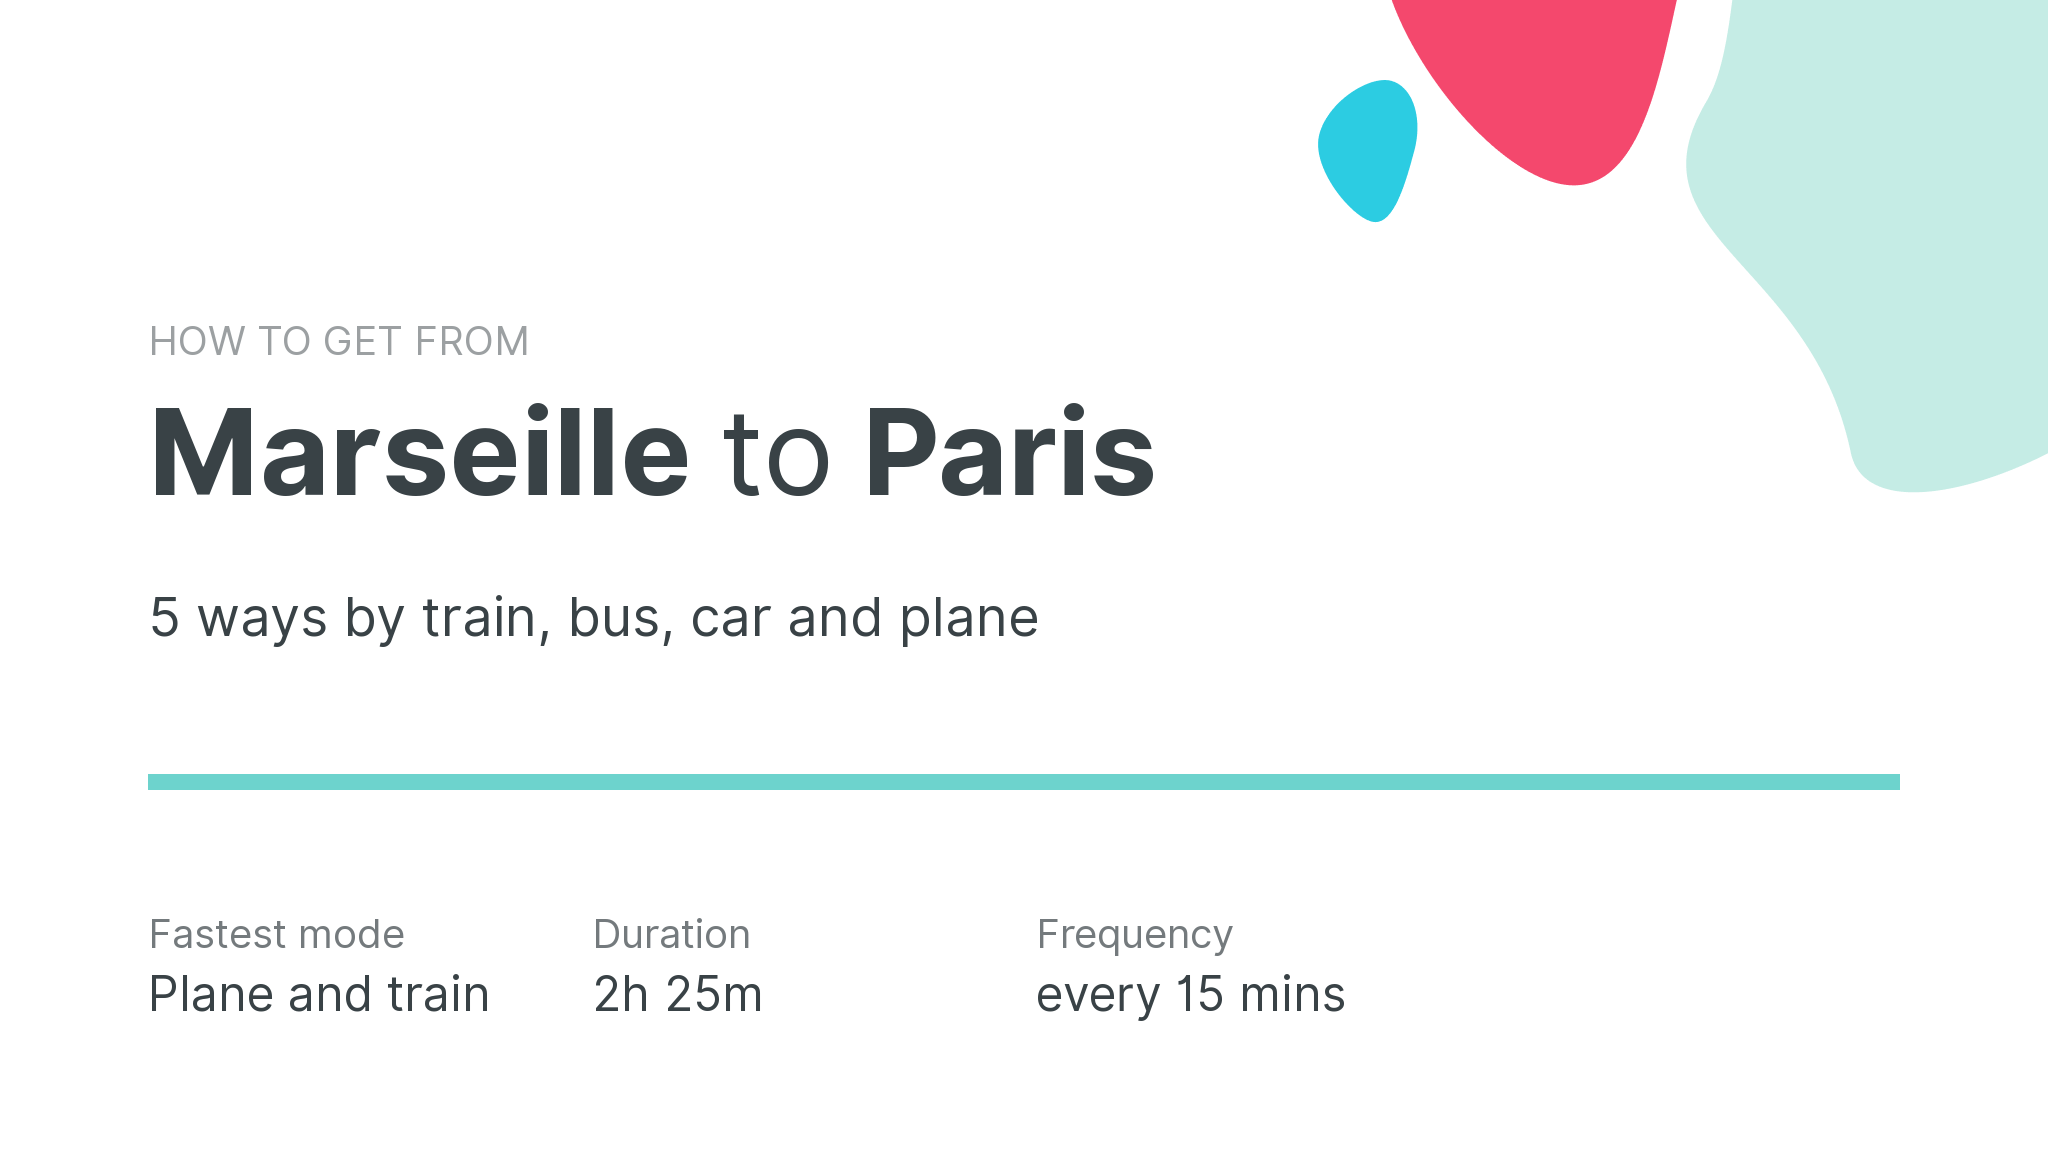 How do I get from Marseille to Paris